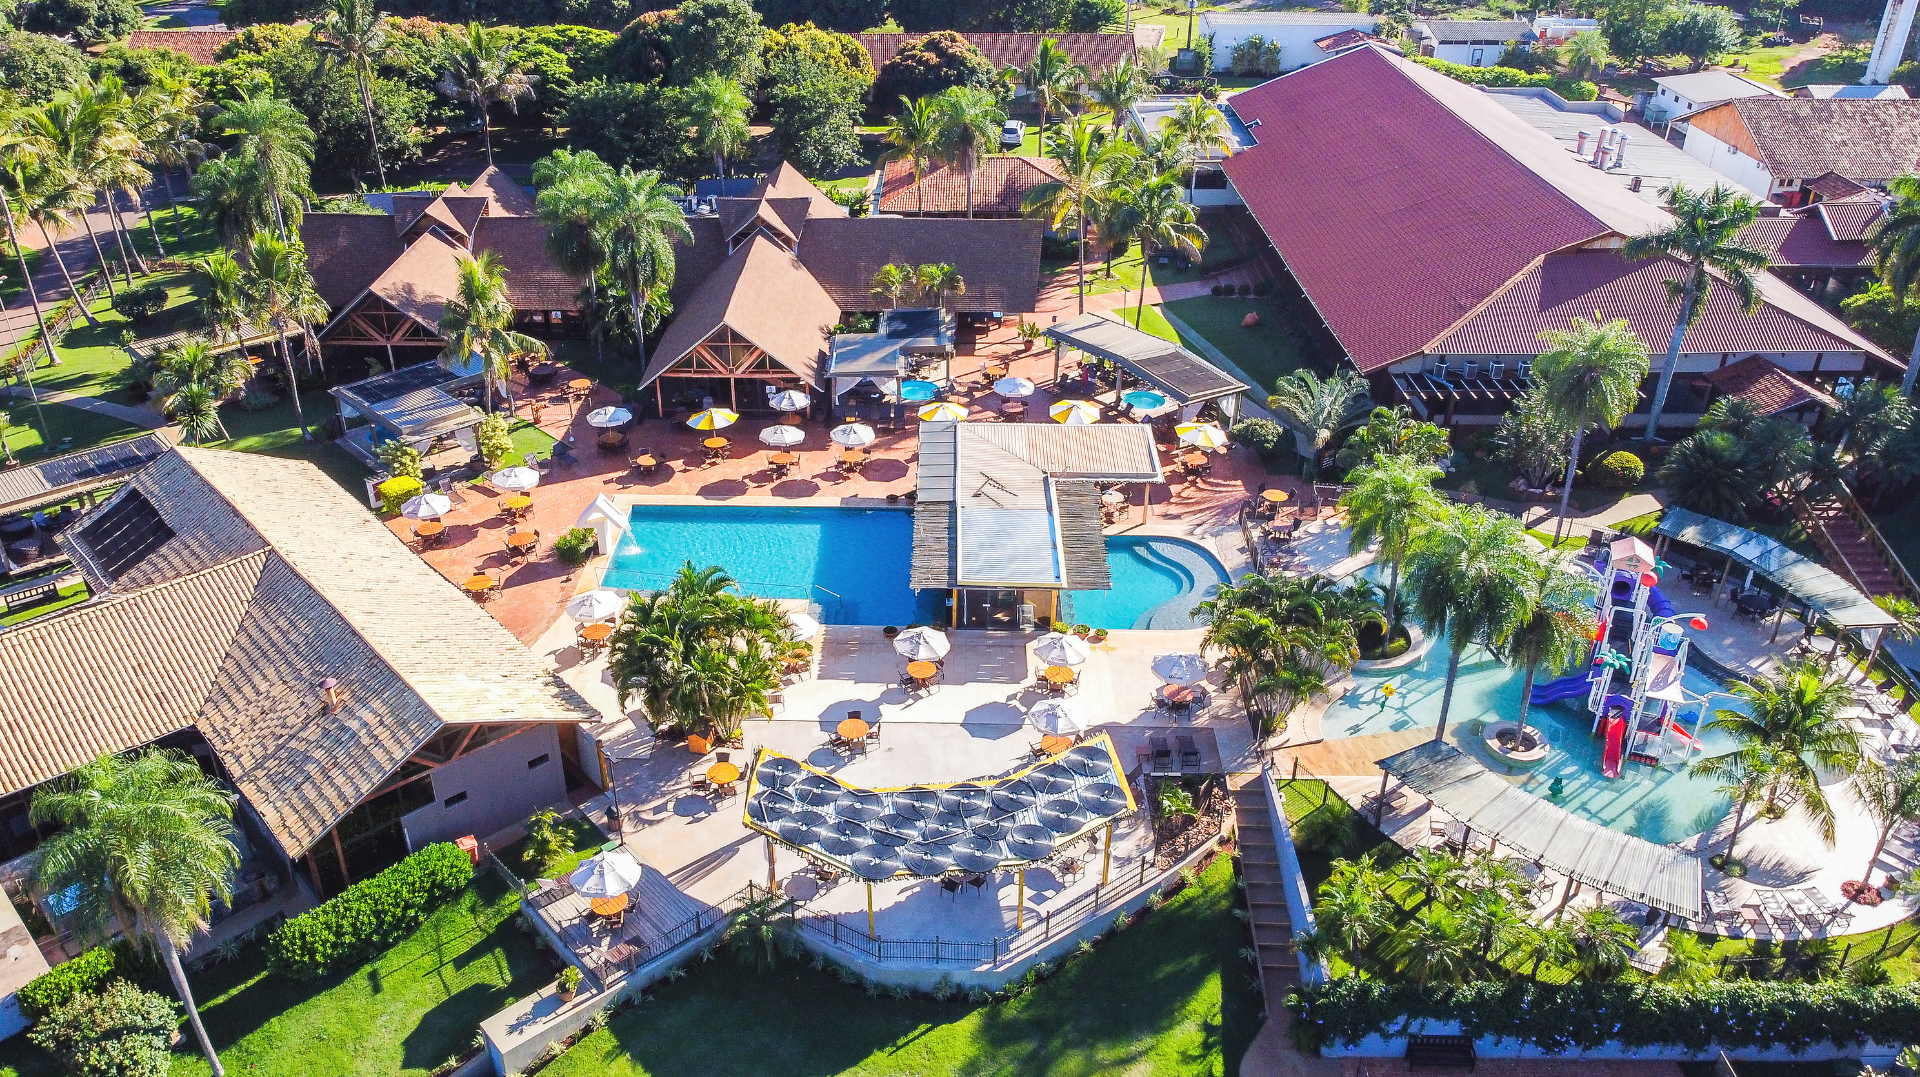 Zagaia Eco Resort Hotel: promoção férias de julho | Vista aérea da piscina do resort | Conexão123